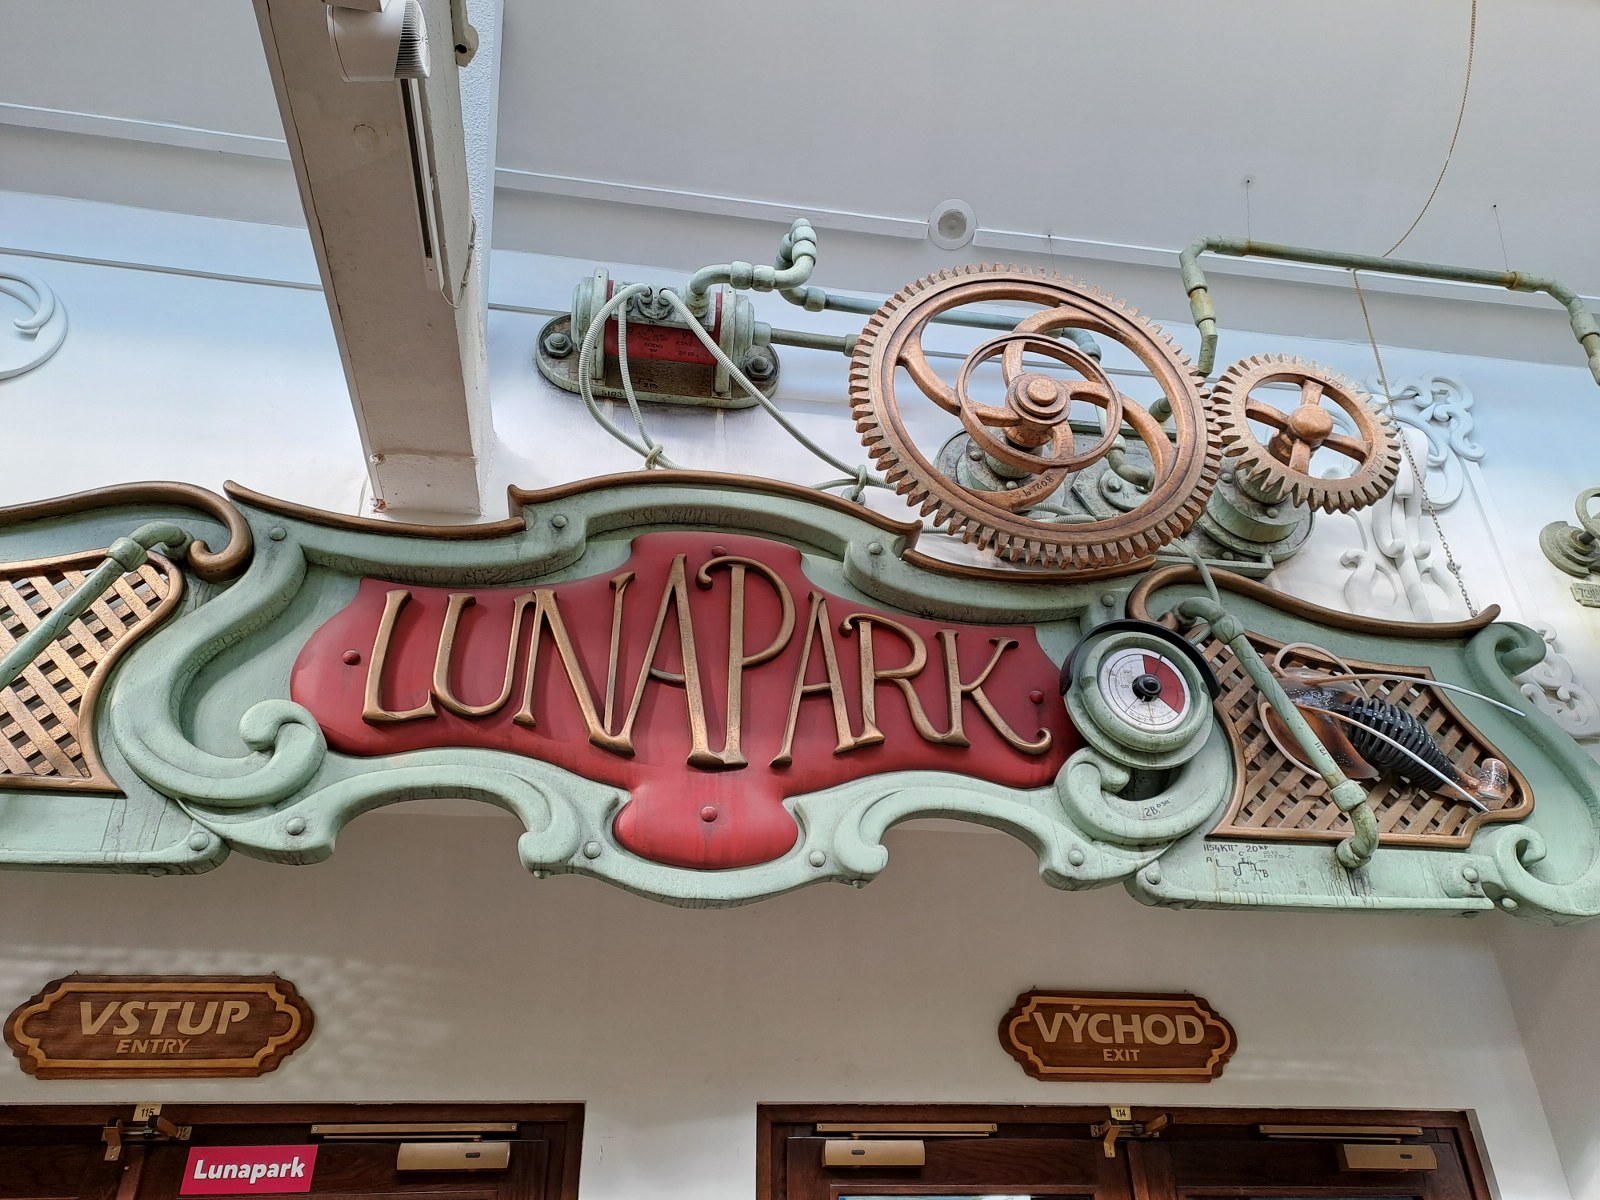 Die virtuelle Realität im Lunapark ist außer Betrieb